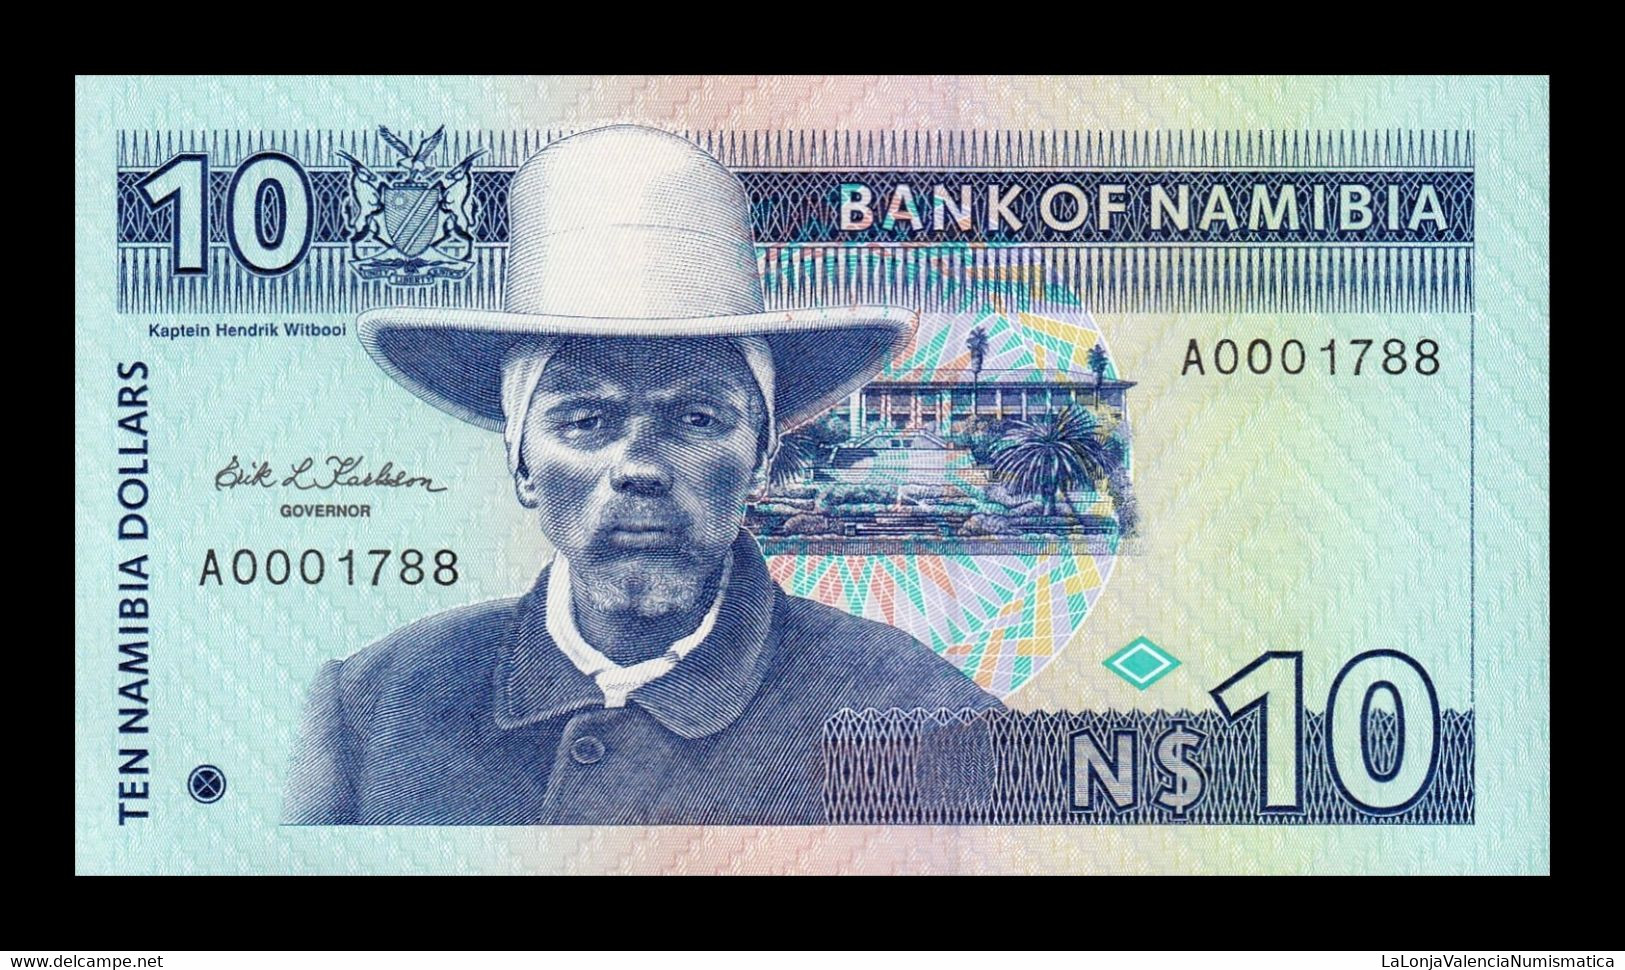 Namibia 10 Dollars 1993 Pick 1 Low Serial SC UNC - Namibie